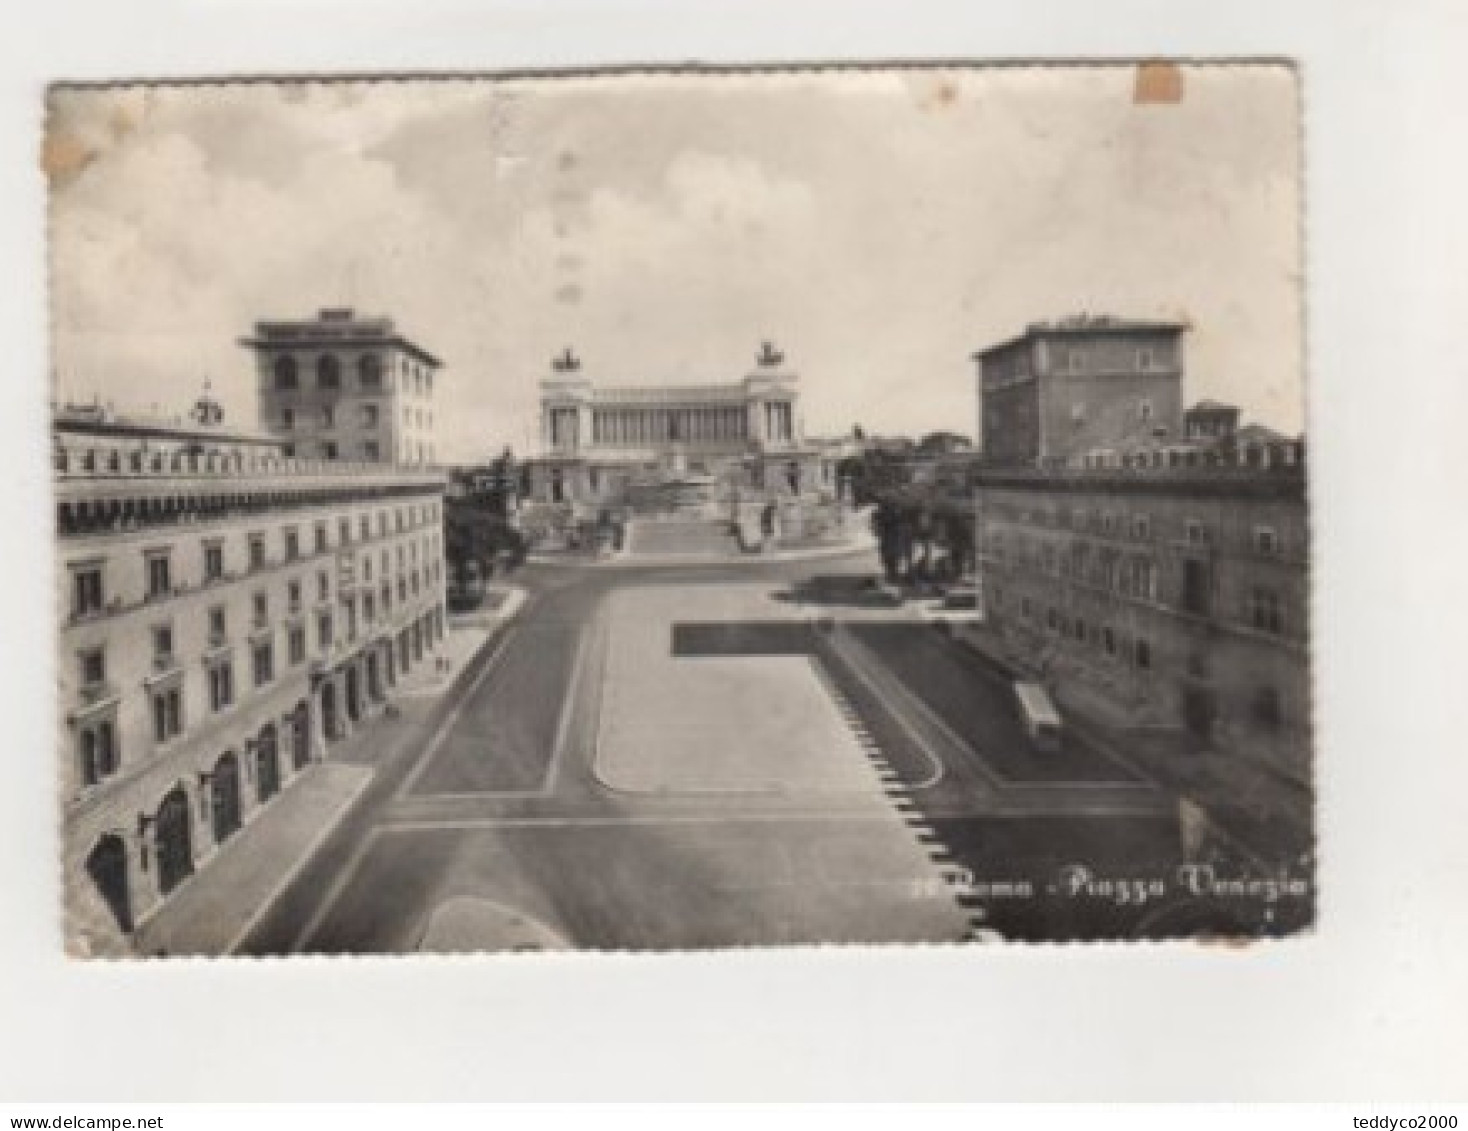 ROMA Palazzo Venezia 1963 - Andere Monumente & Gebäude